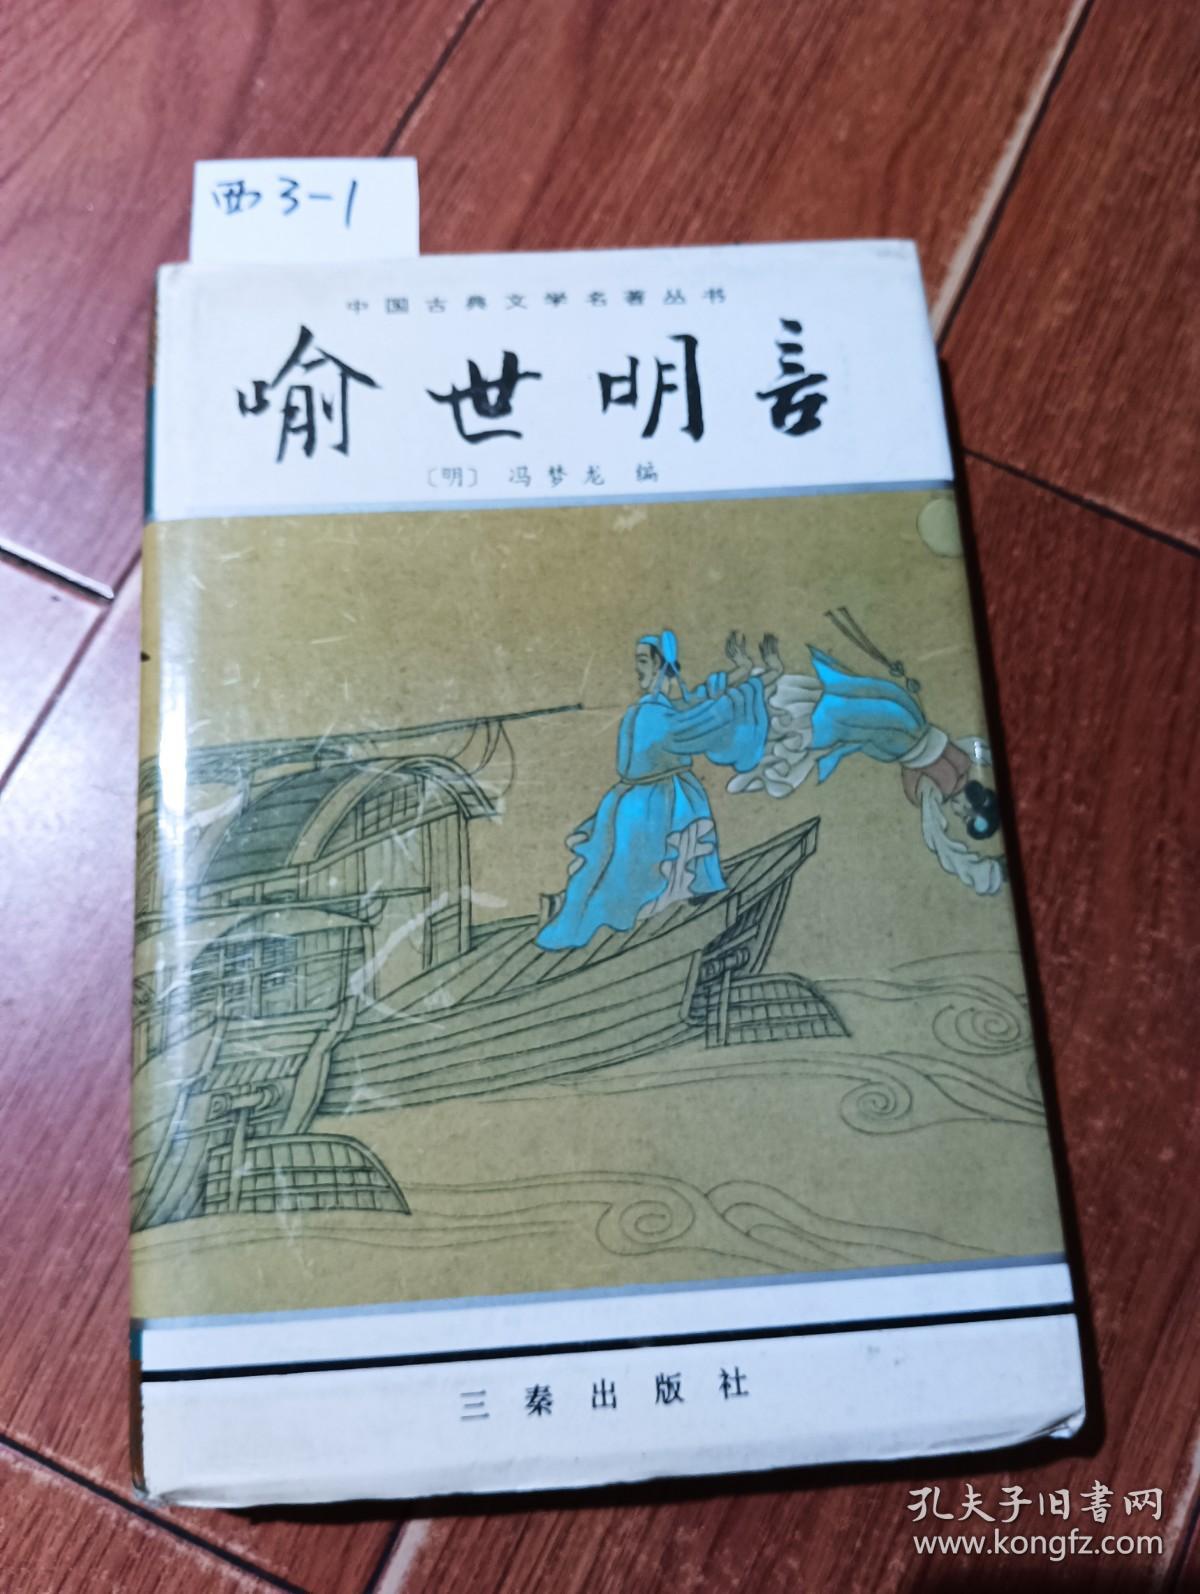 中国古典文学名著丛书：喻世明言（三秦出版社）【货号：西3-1】自然旧。正版。详见书影，实物拍照